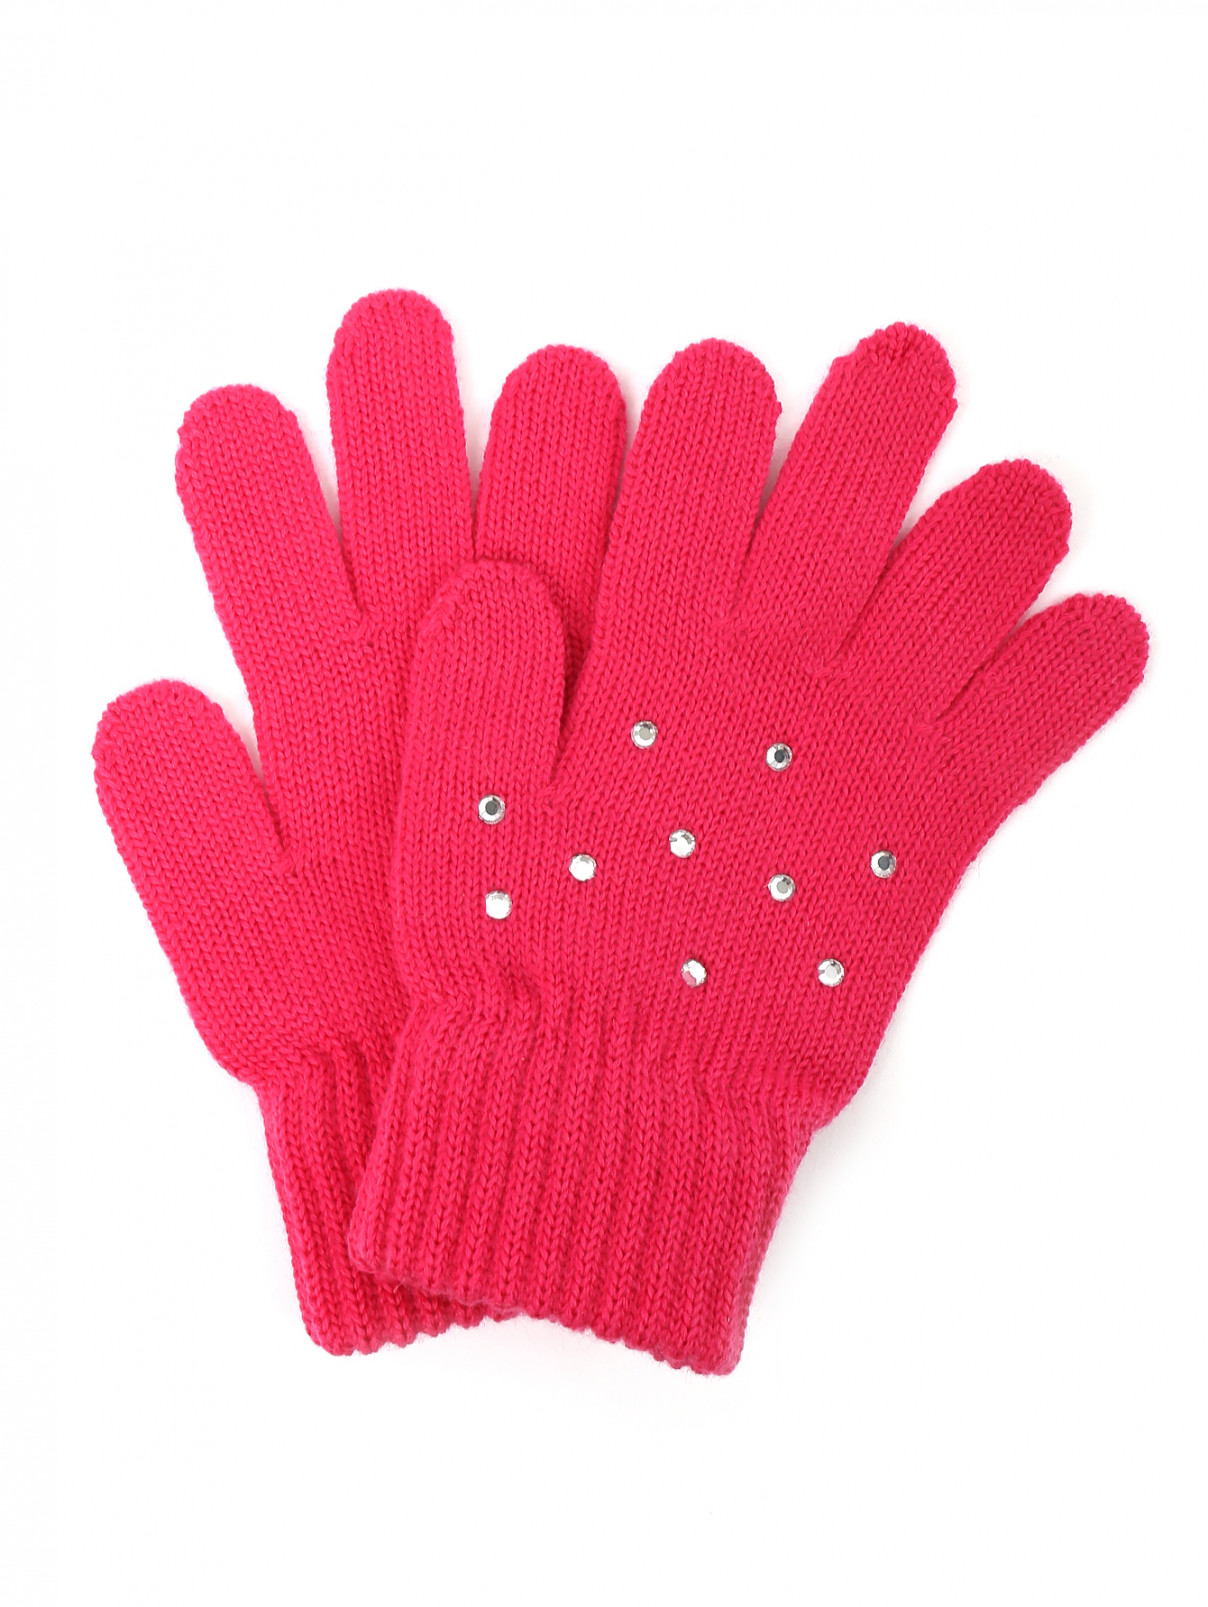 Трикотажные перчатки из шерсти со стразами Catya  –  Общий вид  – Цвет:  Розовый